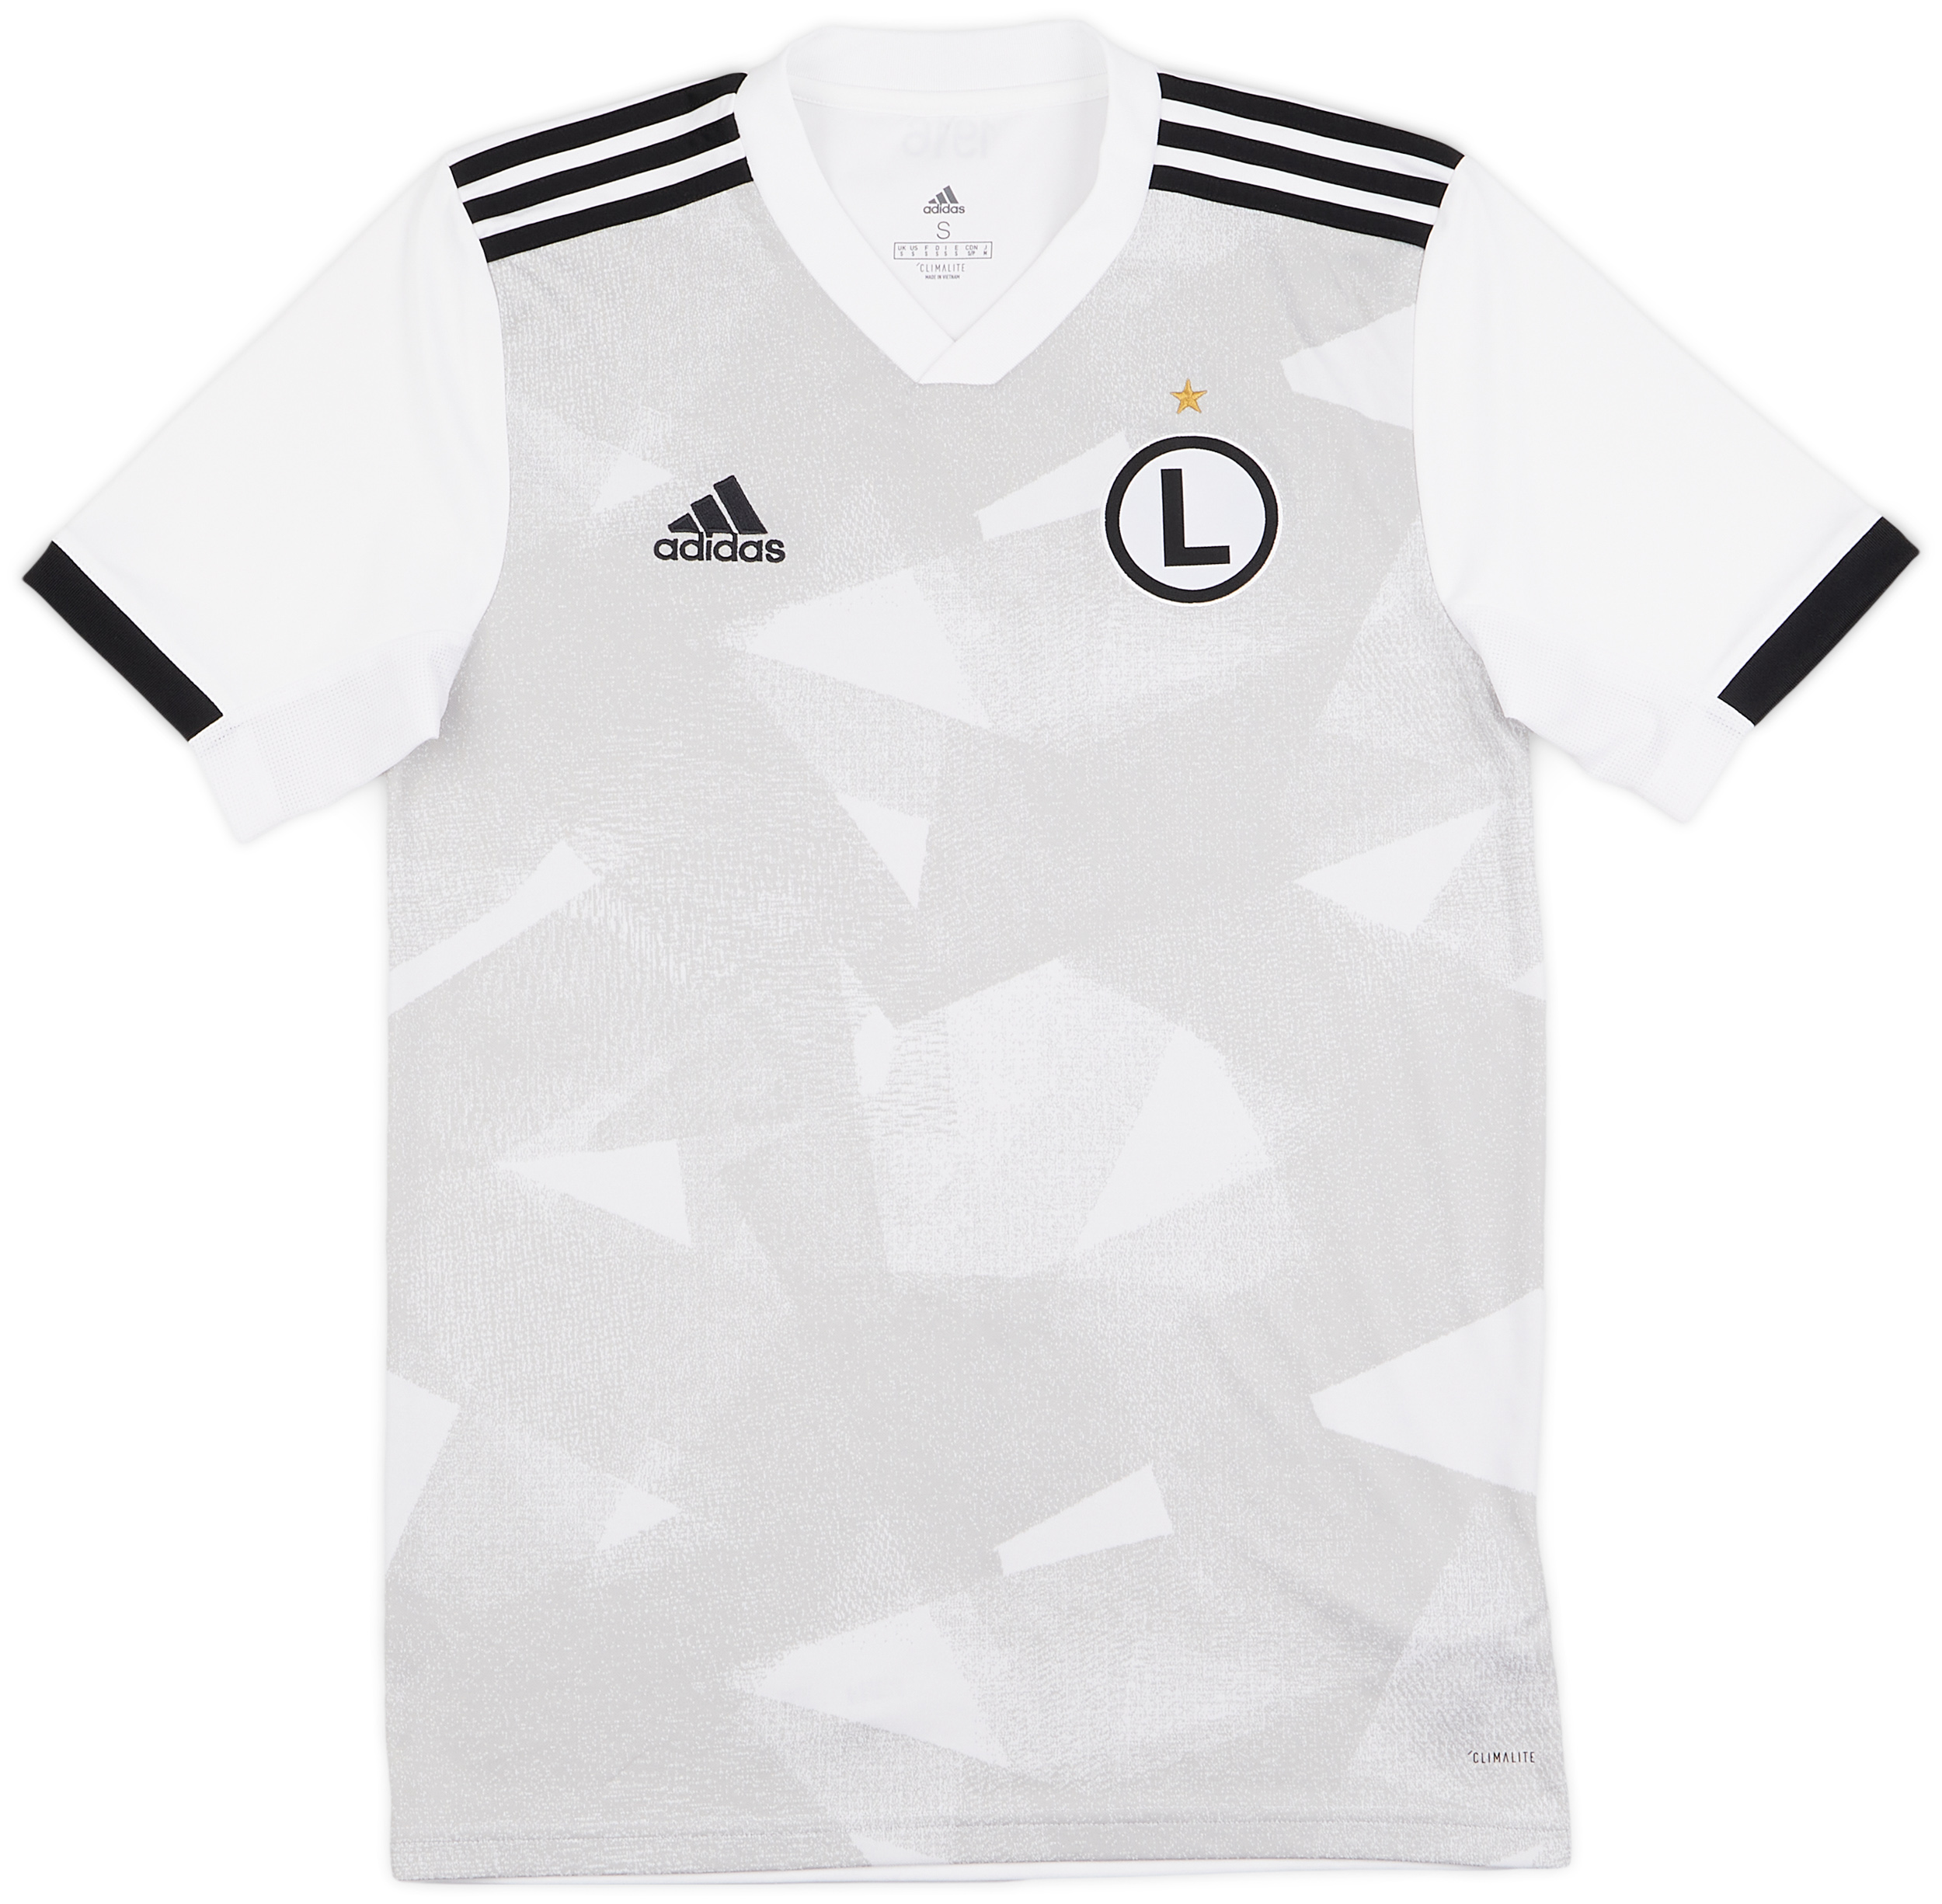 Legia Warsaw   חוץ חולצה (Original)